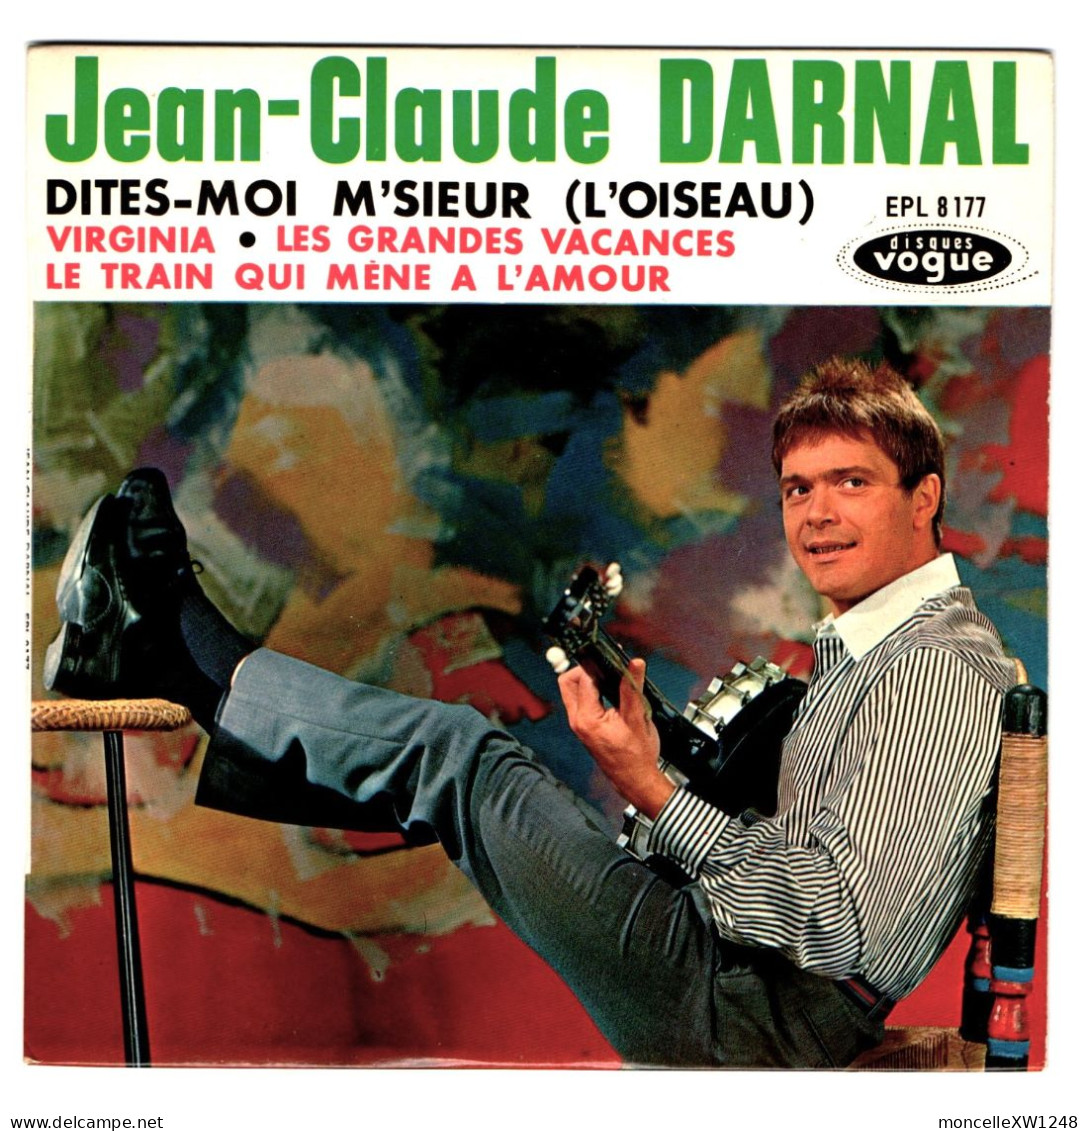 Jean-Claude Darnal - 45 T EP Dites-moi M'sieur (1963) - 45 Rpm - Maxi-Single